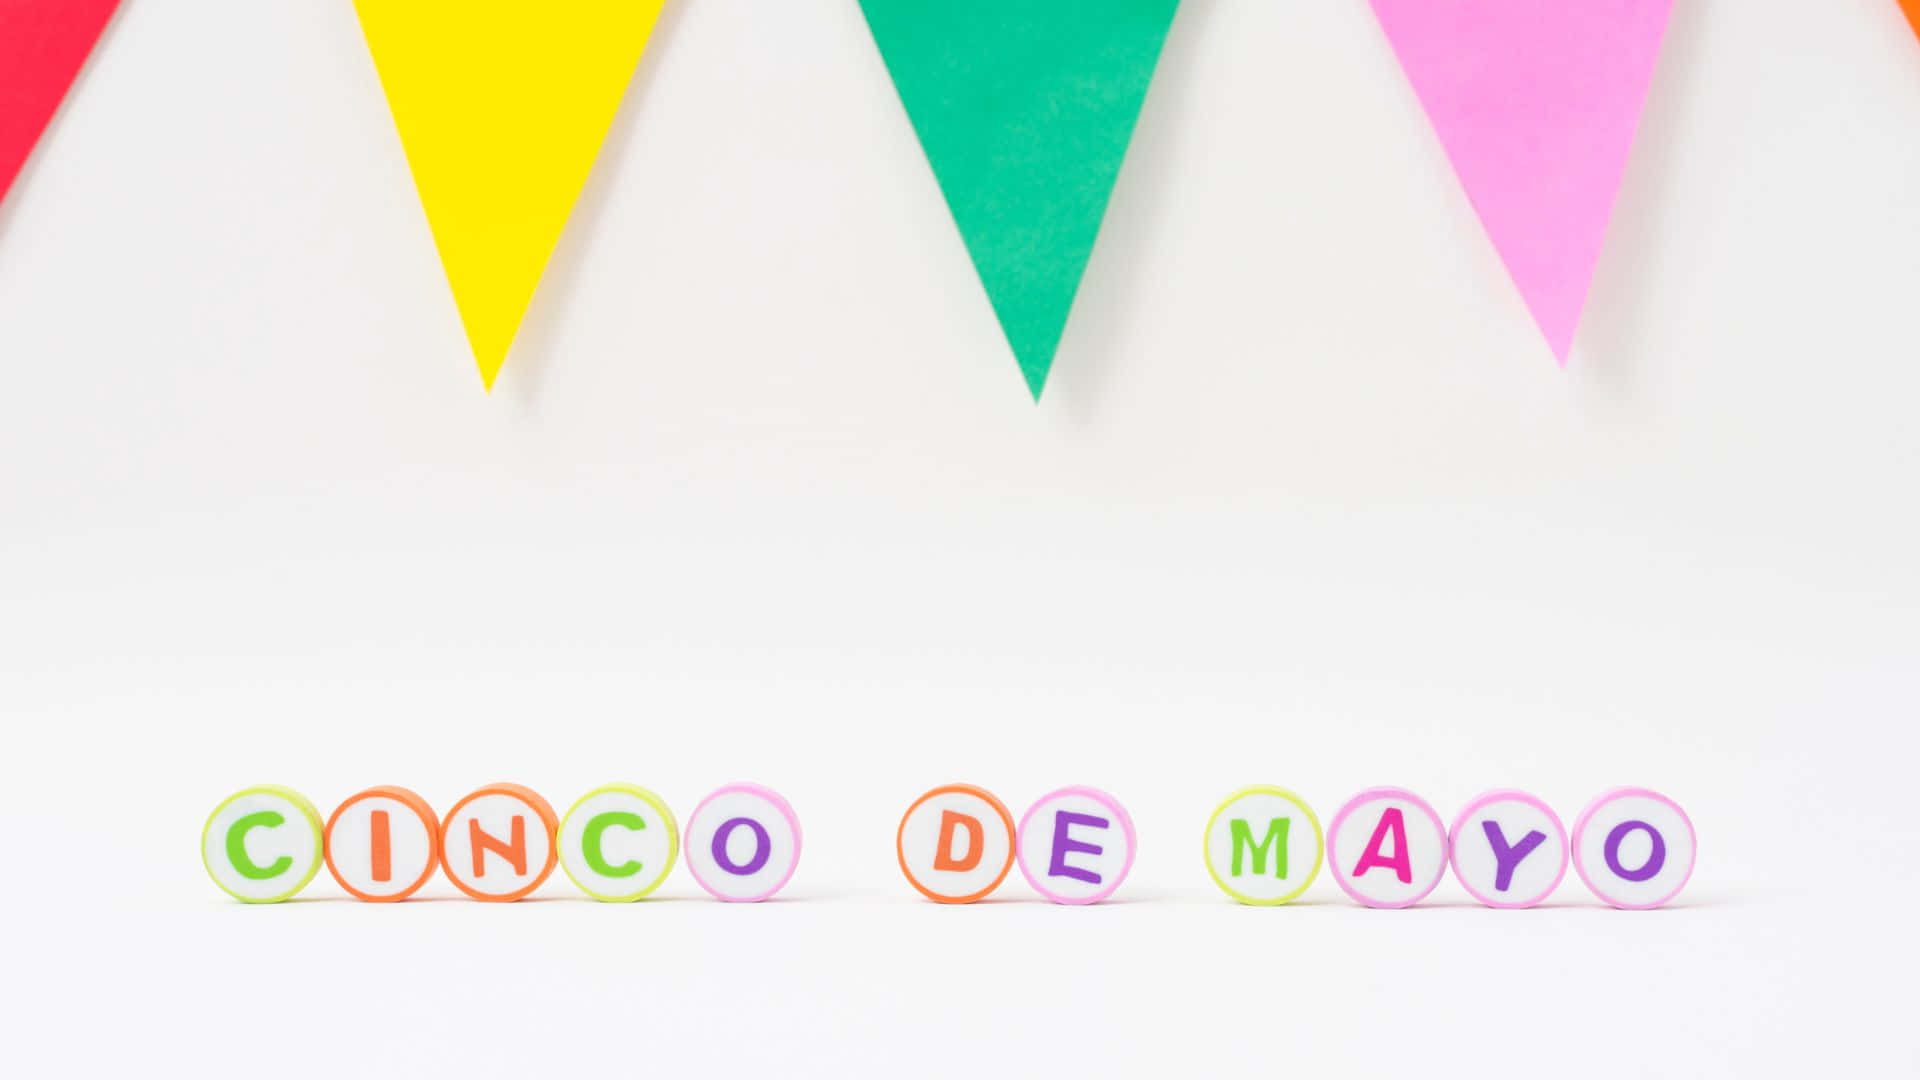 Bildfeiern Sie Den Cinco De Mayo Mit Stil! Wallpaper